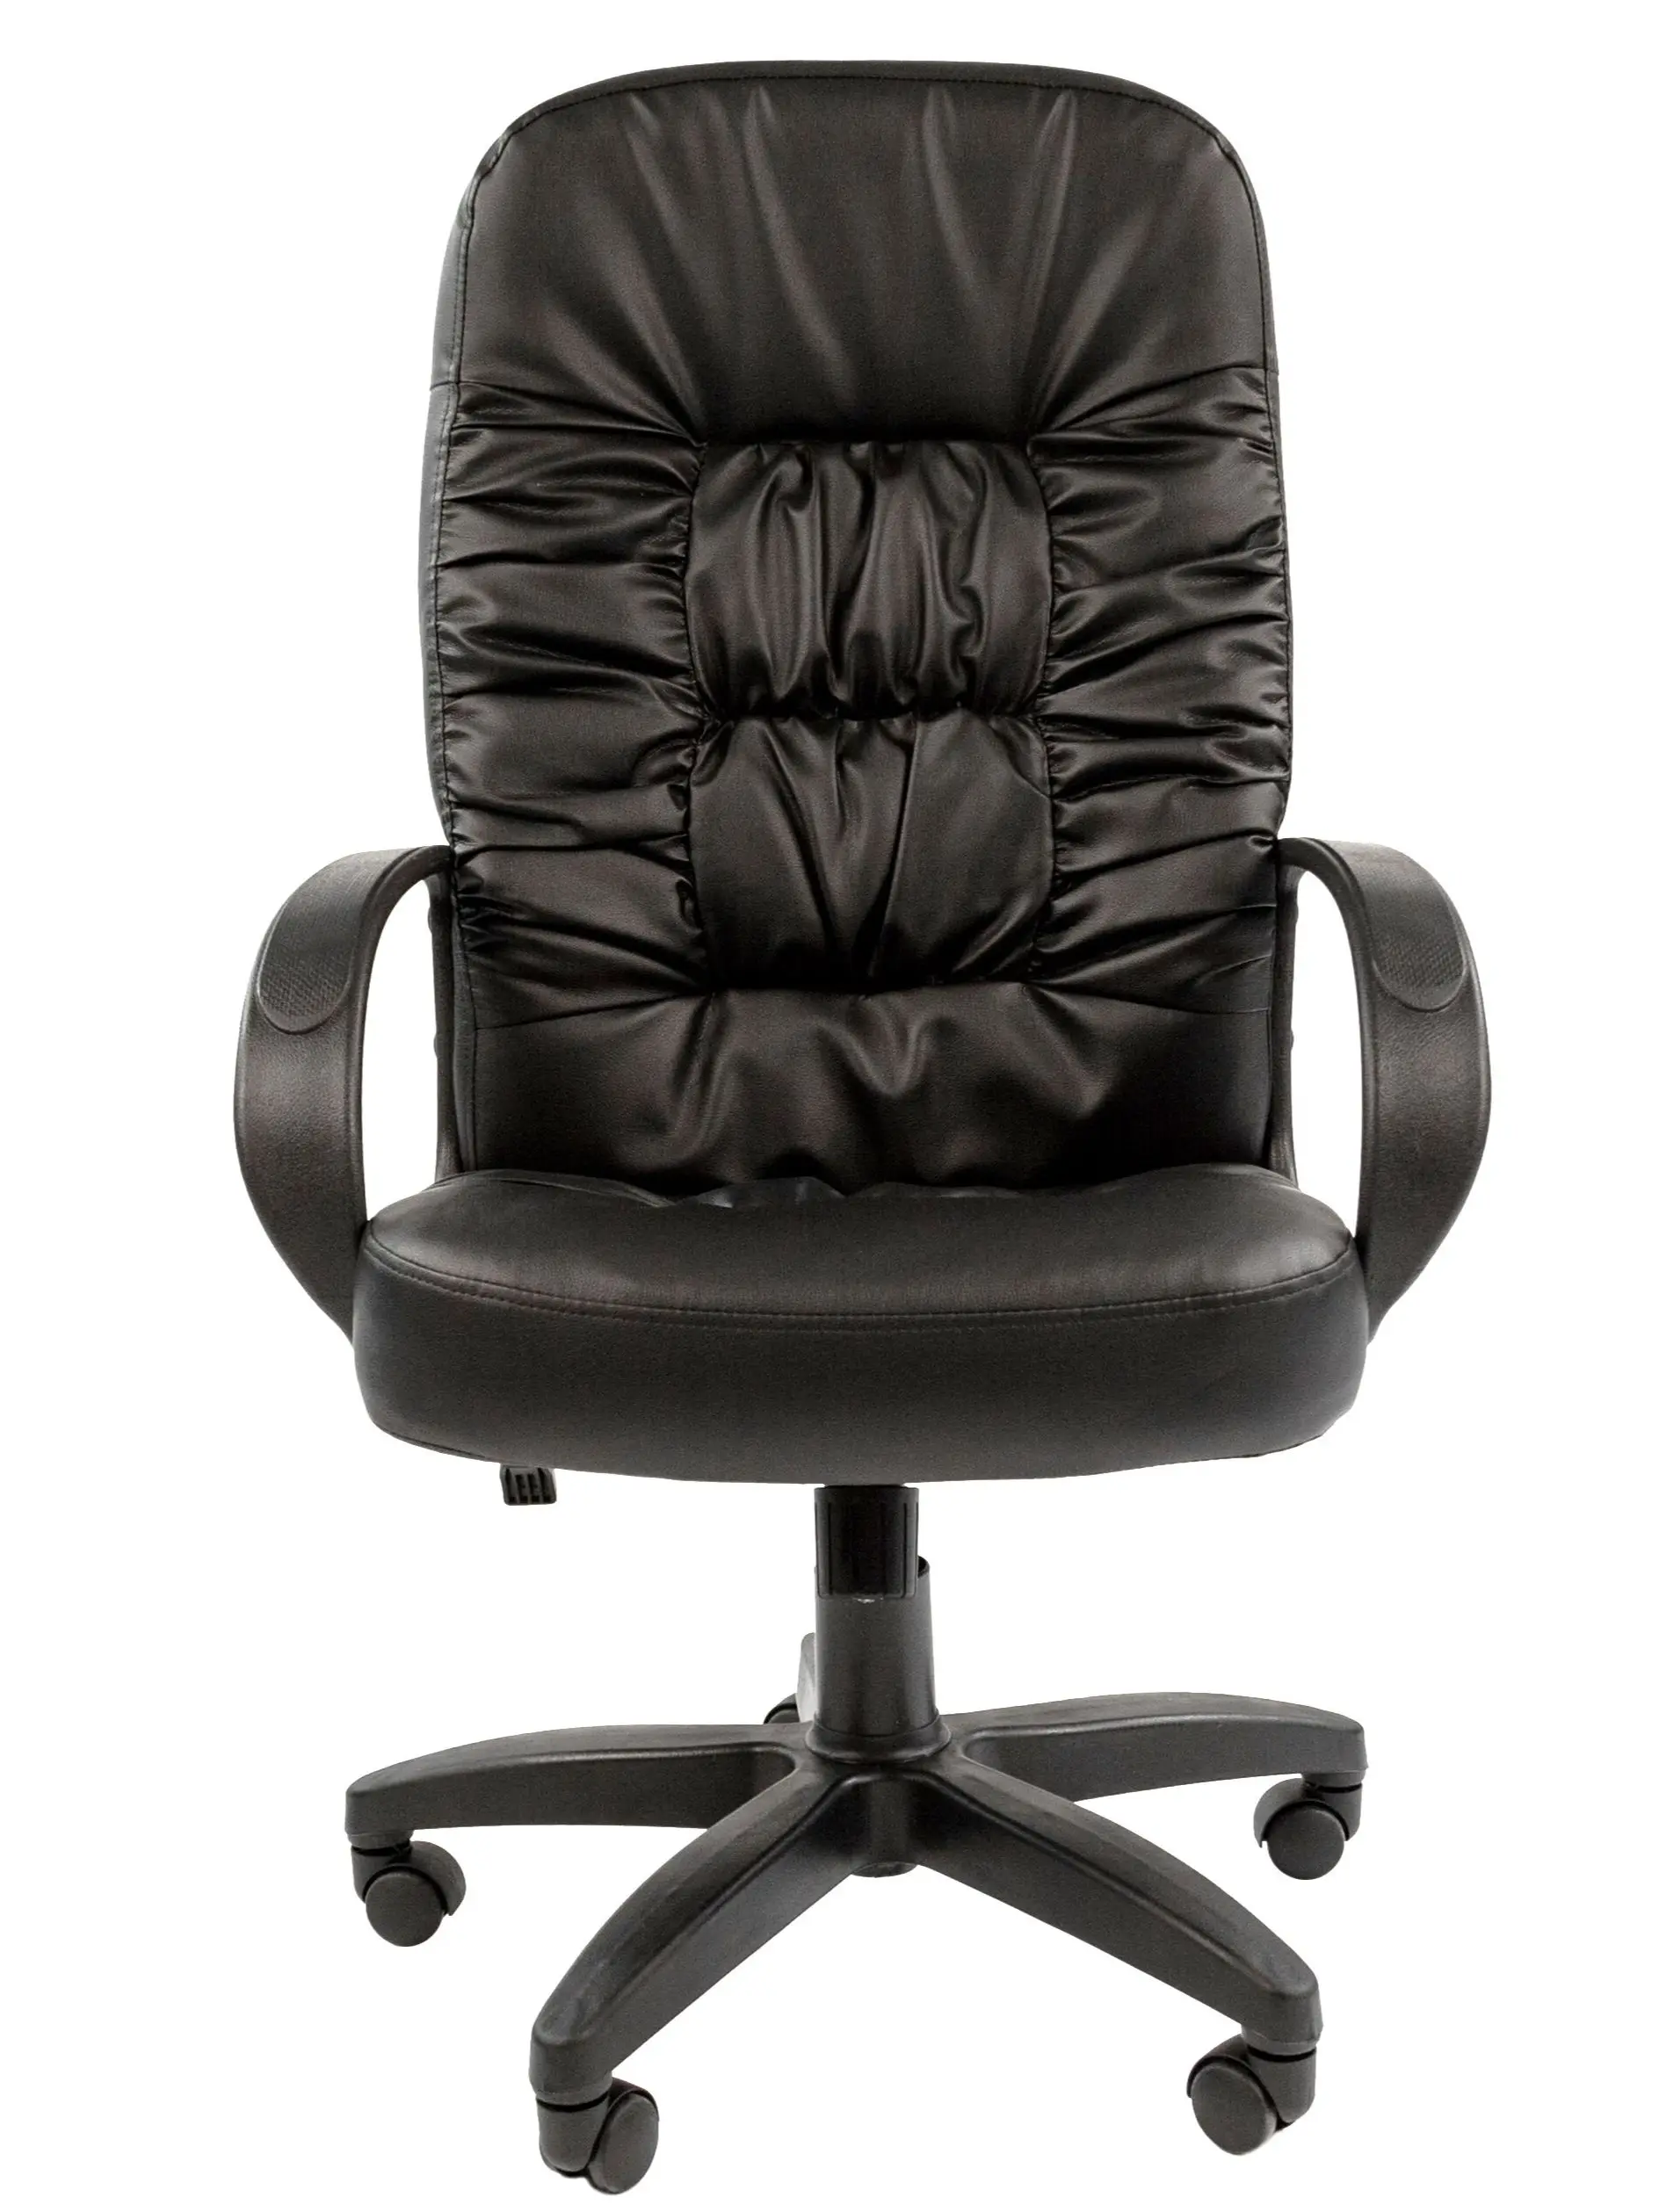 кресло для руководителя Chairman 416 в экокоже с низкой спинкой дома офиса - купить